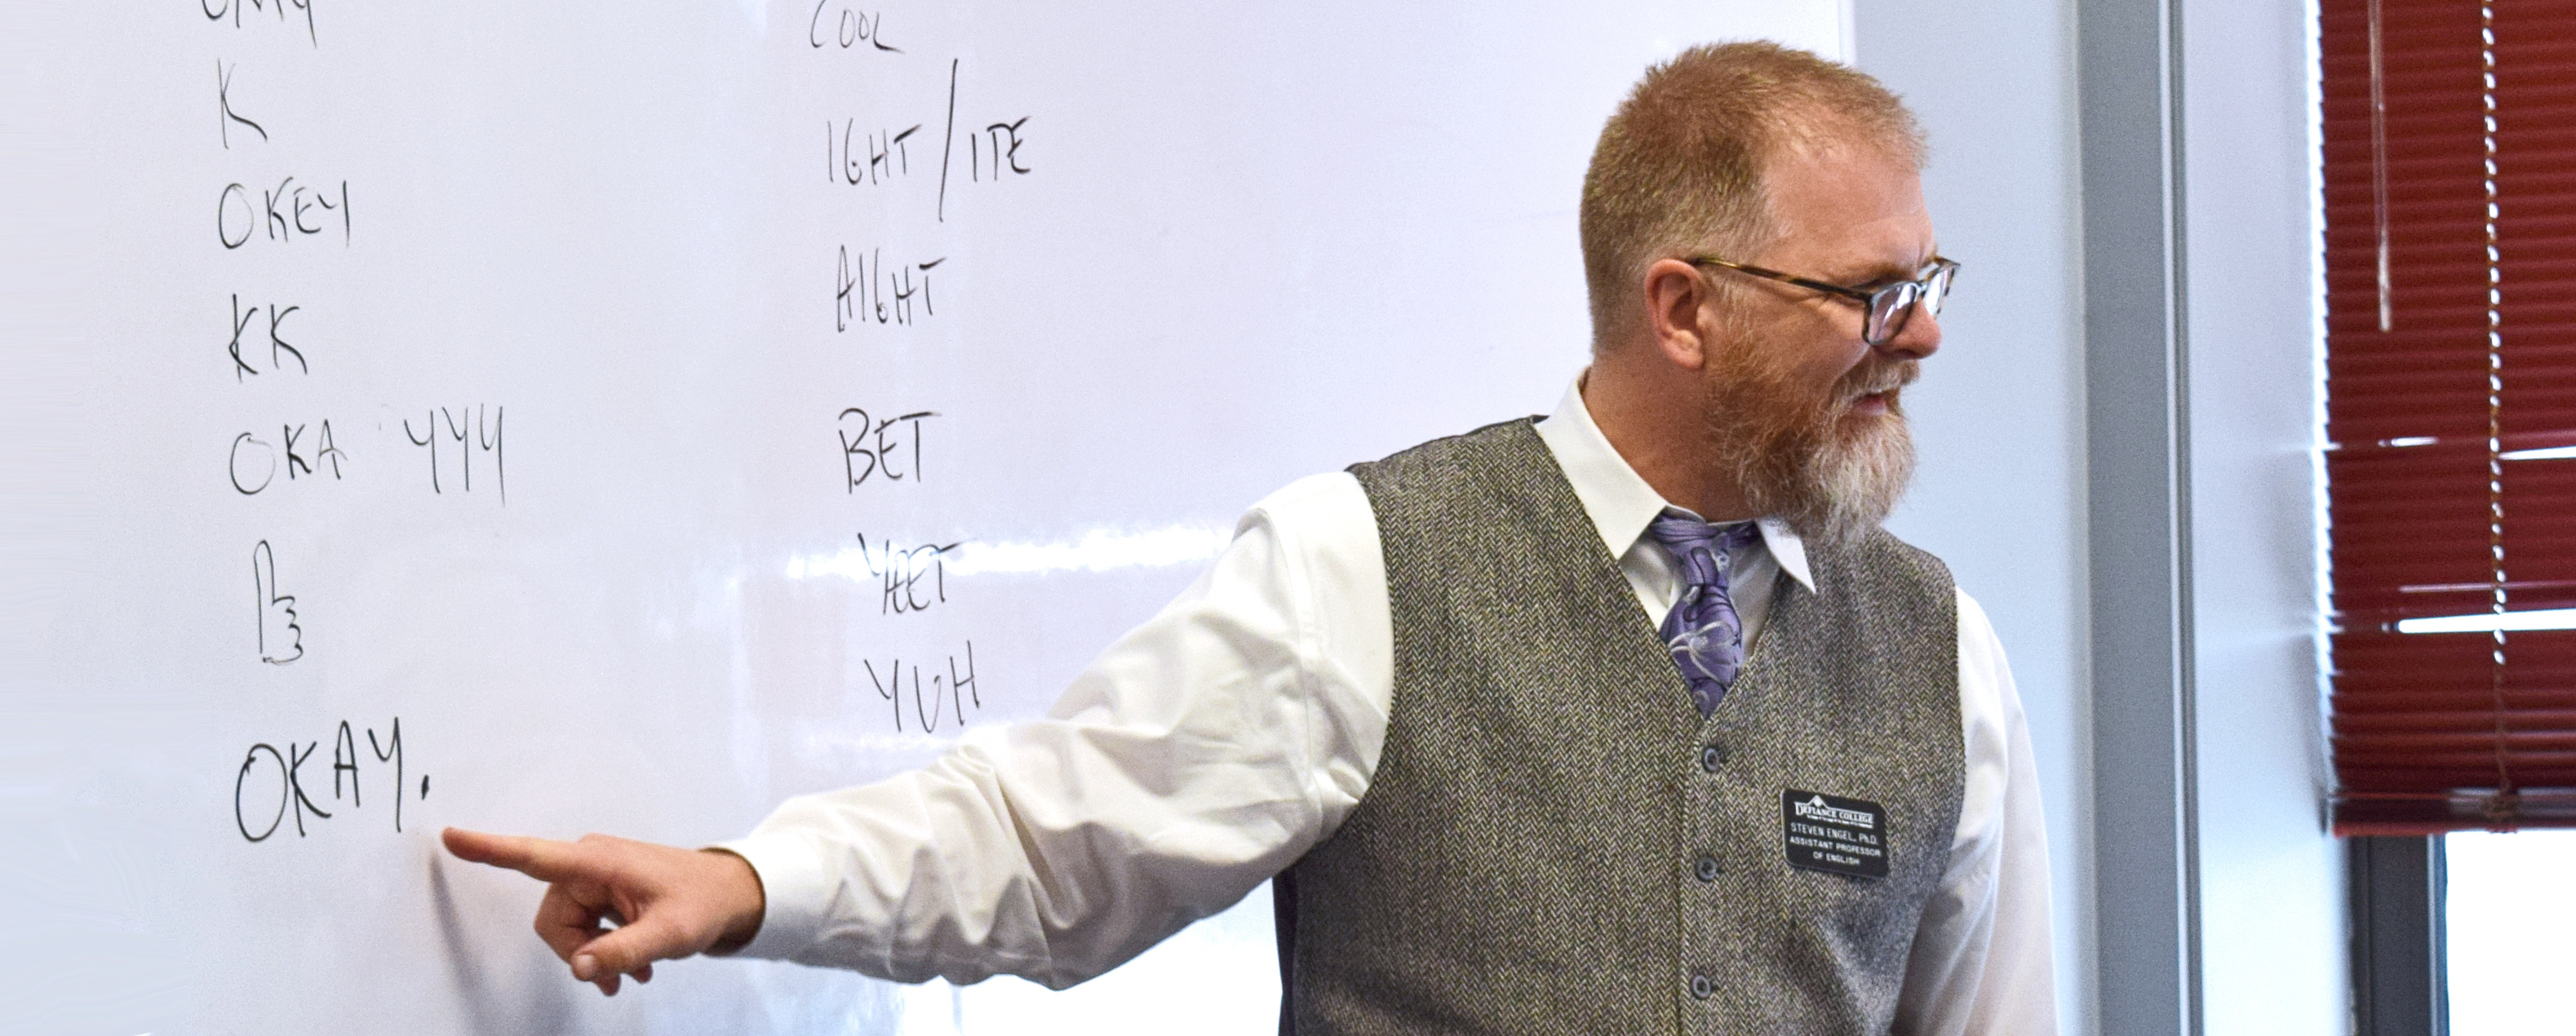 male professor speaking in front of a whiteboard